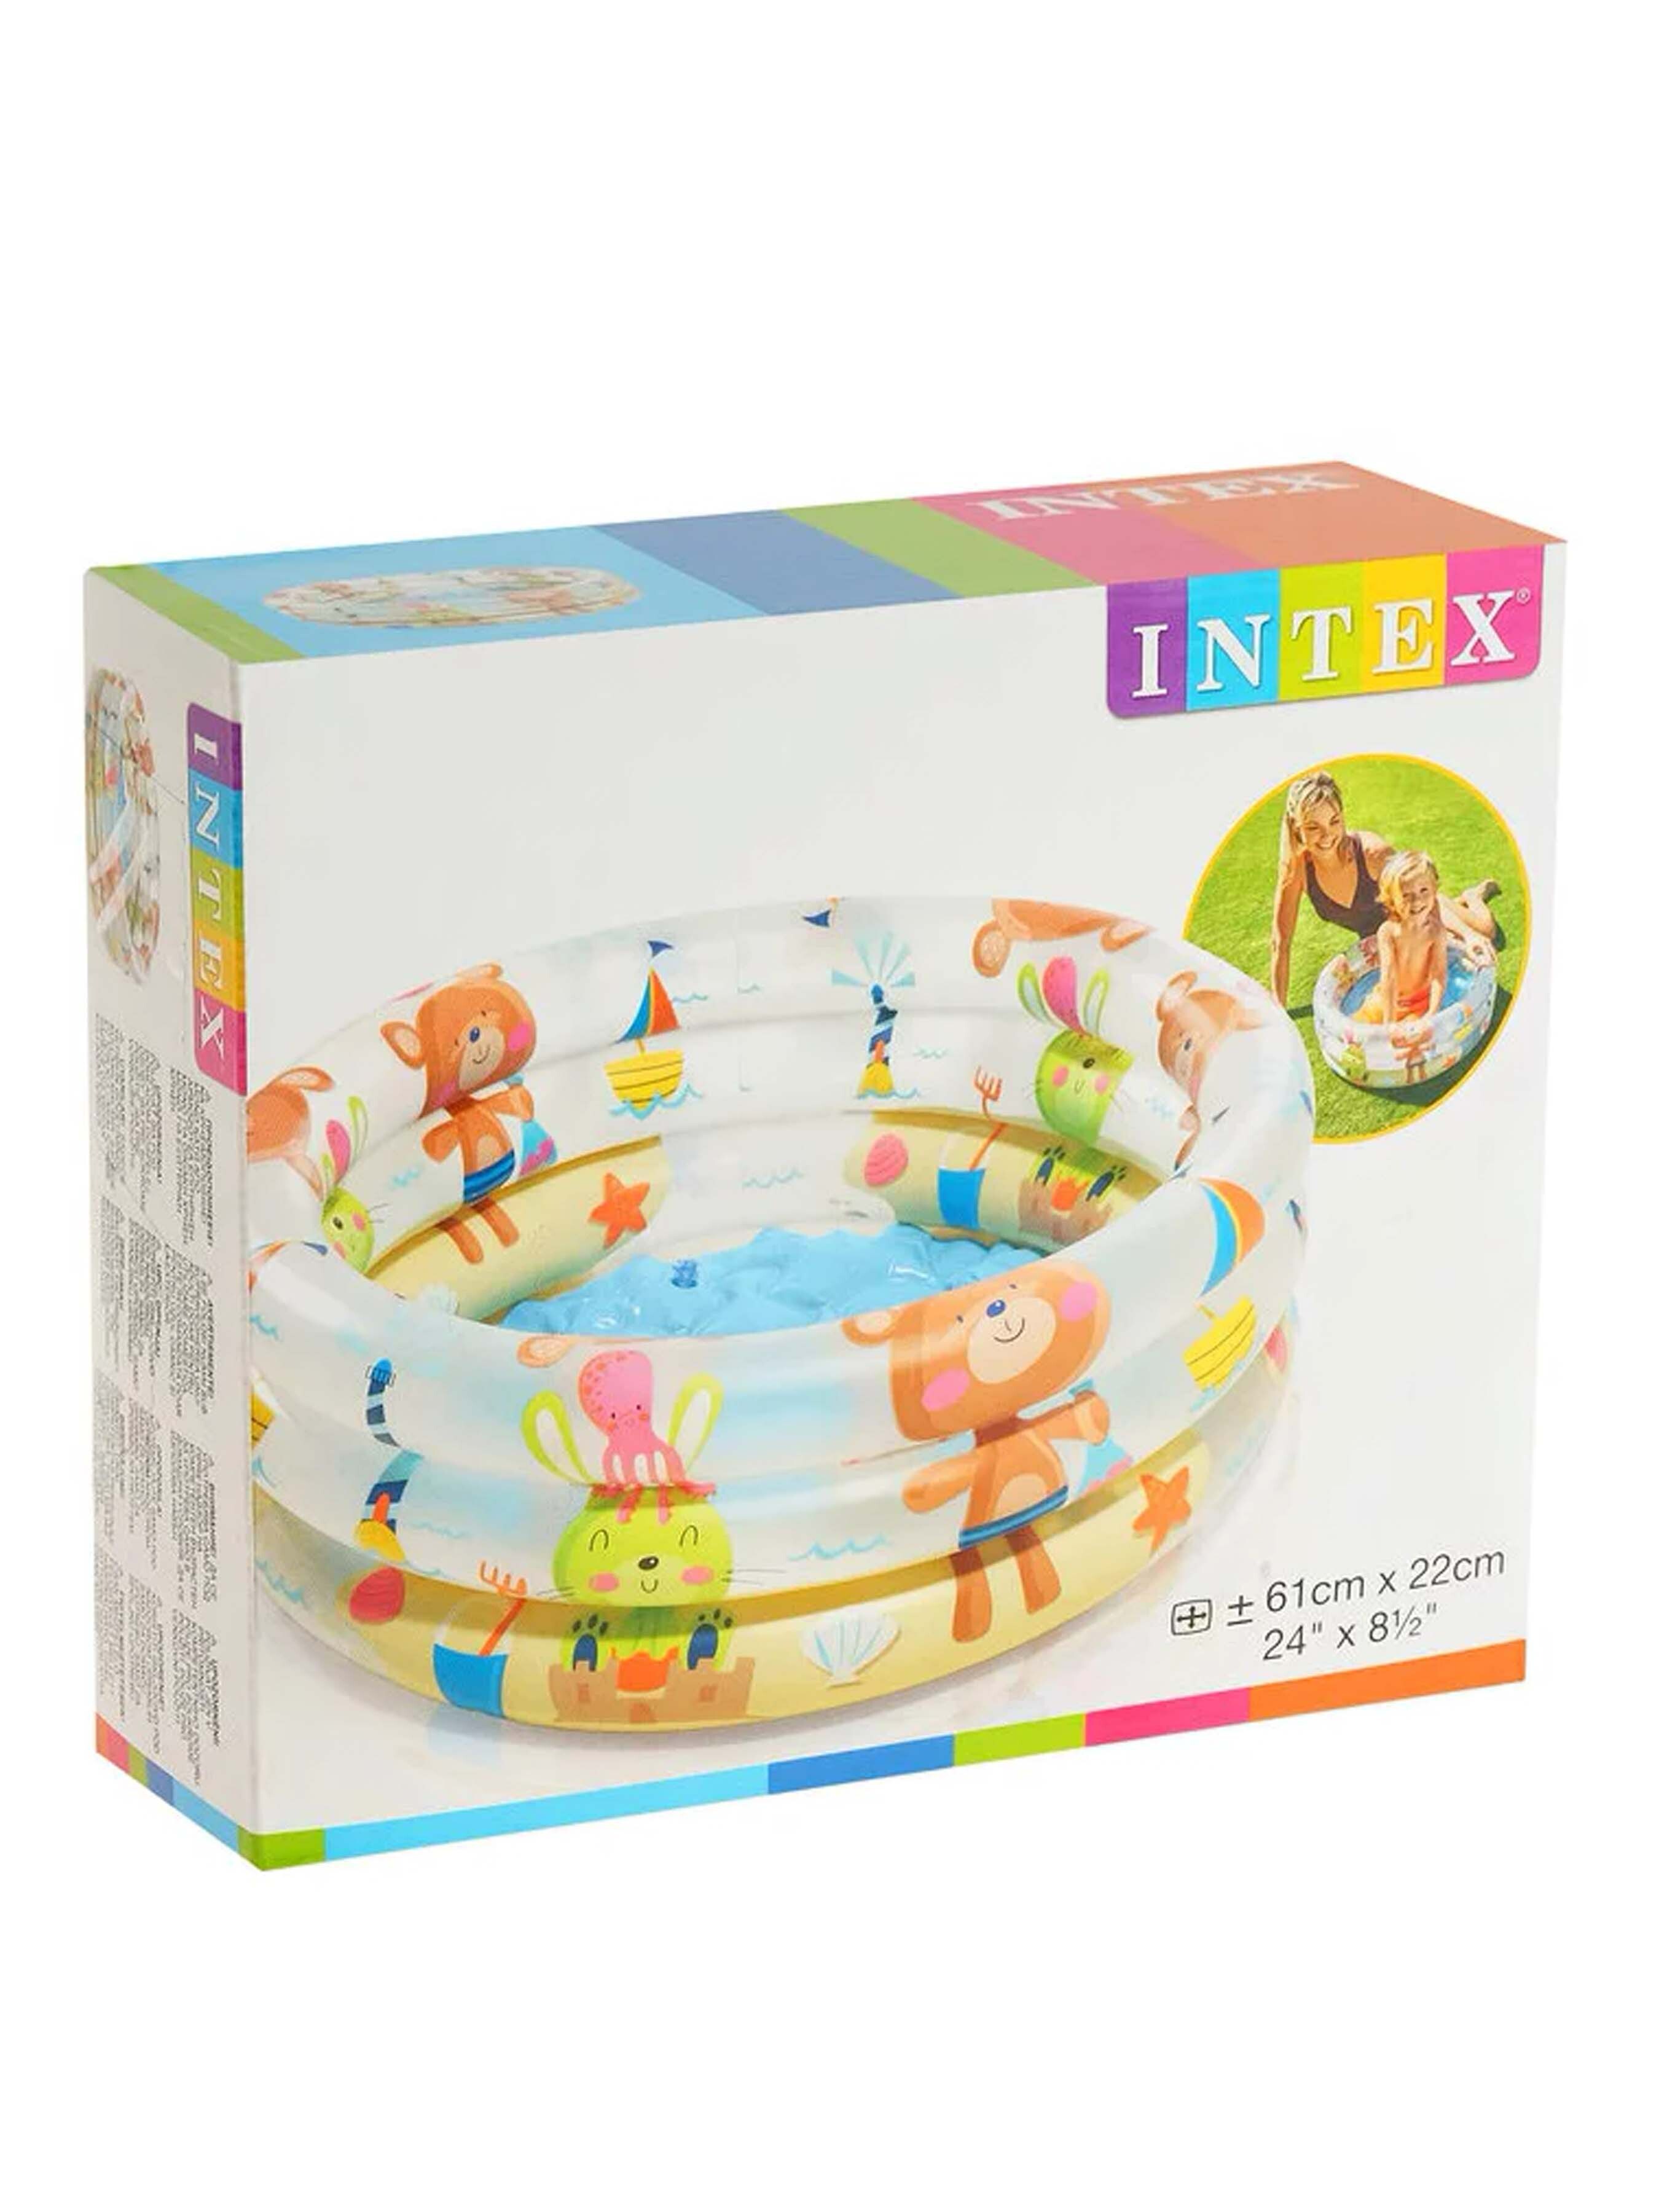 Детский надувной бассейн INTEX 57106 Мишки 61х22 см 33 л надувной бассейн интекс ананас с надувным дном и навесом 102х94 см от 1 до 3 лет